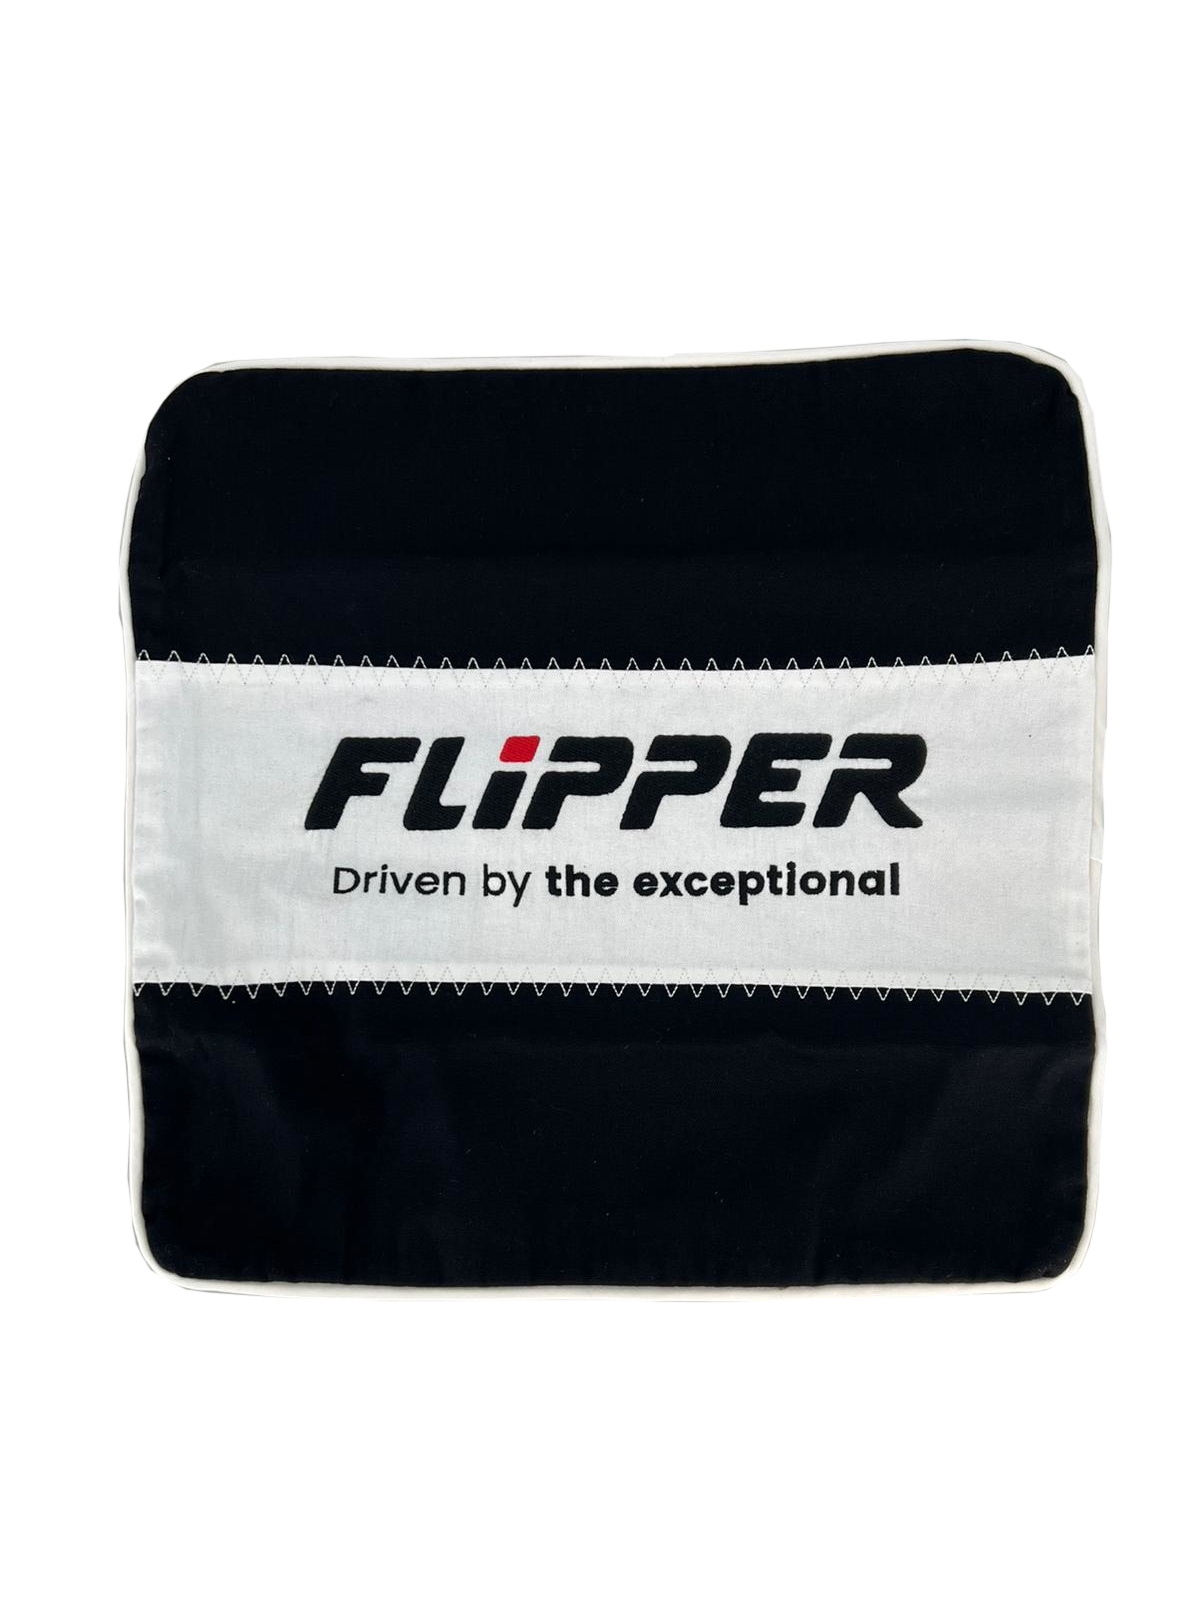 FLIPPER Pillow case canvas, black